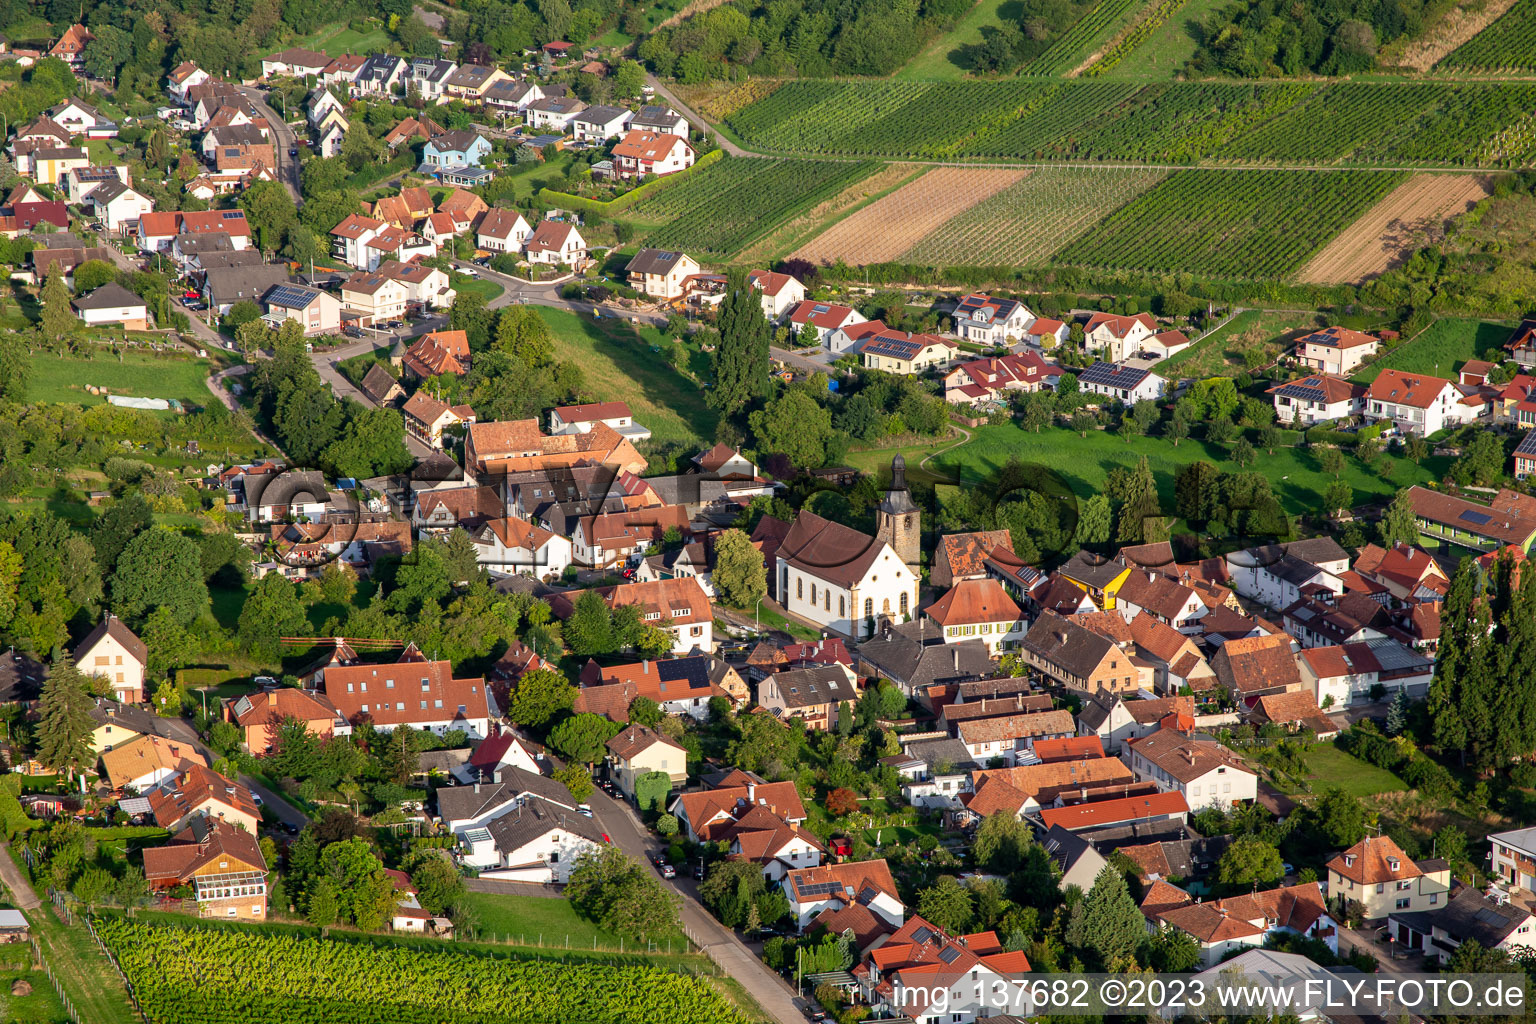 Vue aérienne de Saint-Simon à le quartier Pleisweiler in Pleisweiler-Oberhofen dans le département Rhénanie-Palatinat, Allemagne